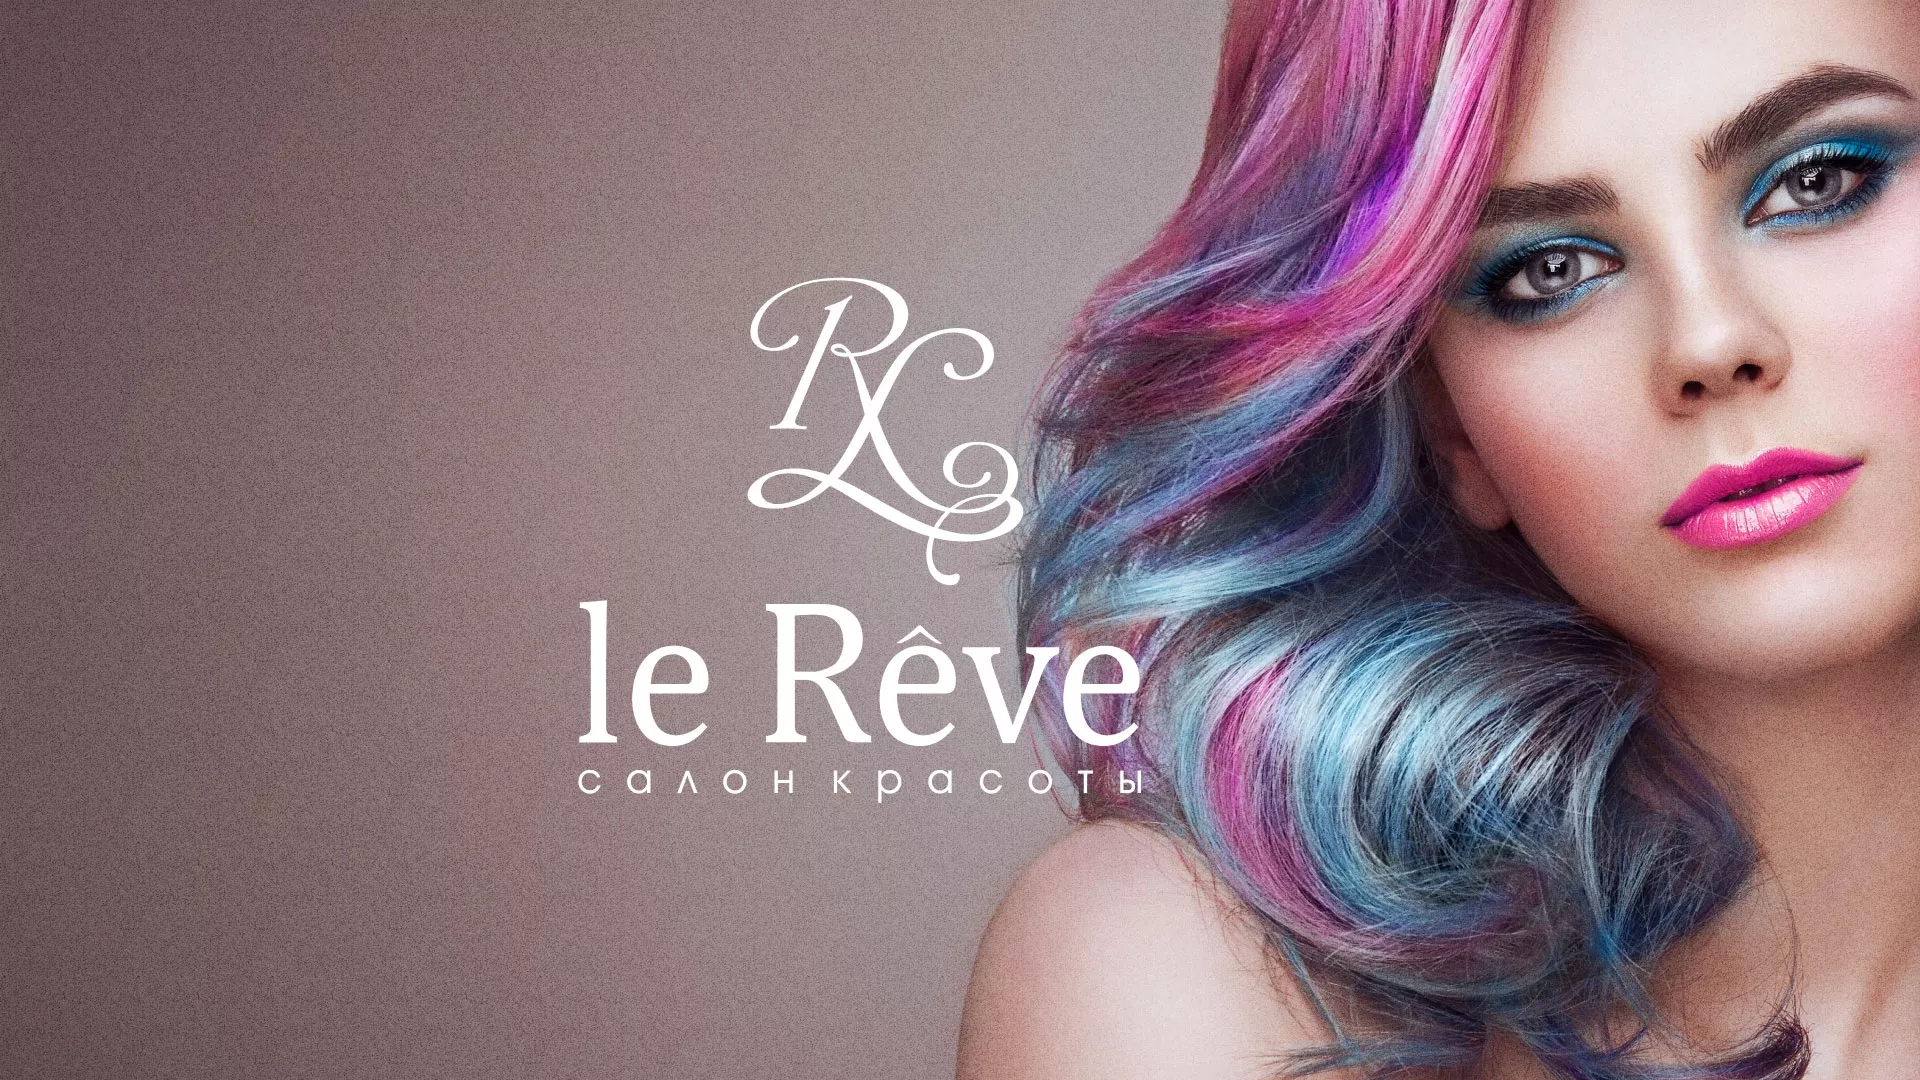 Создание сайта для салона красоты «Le Reve»